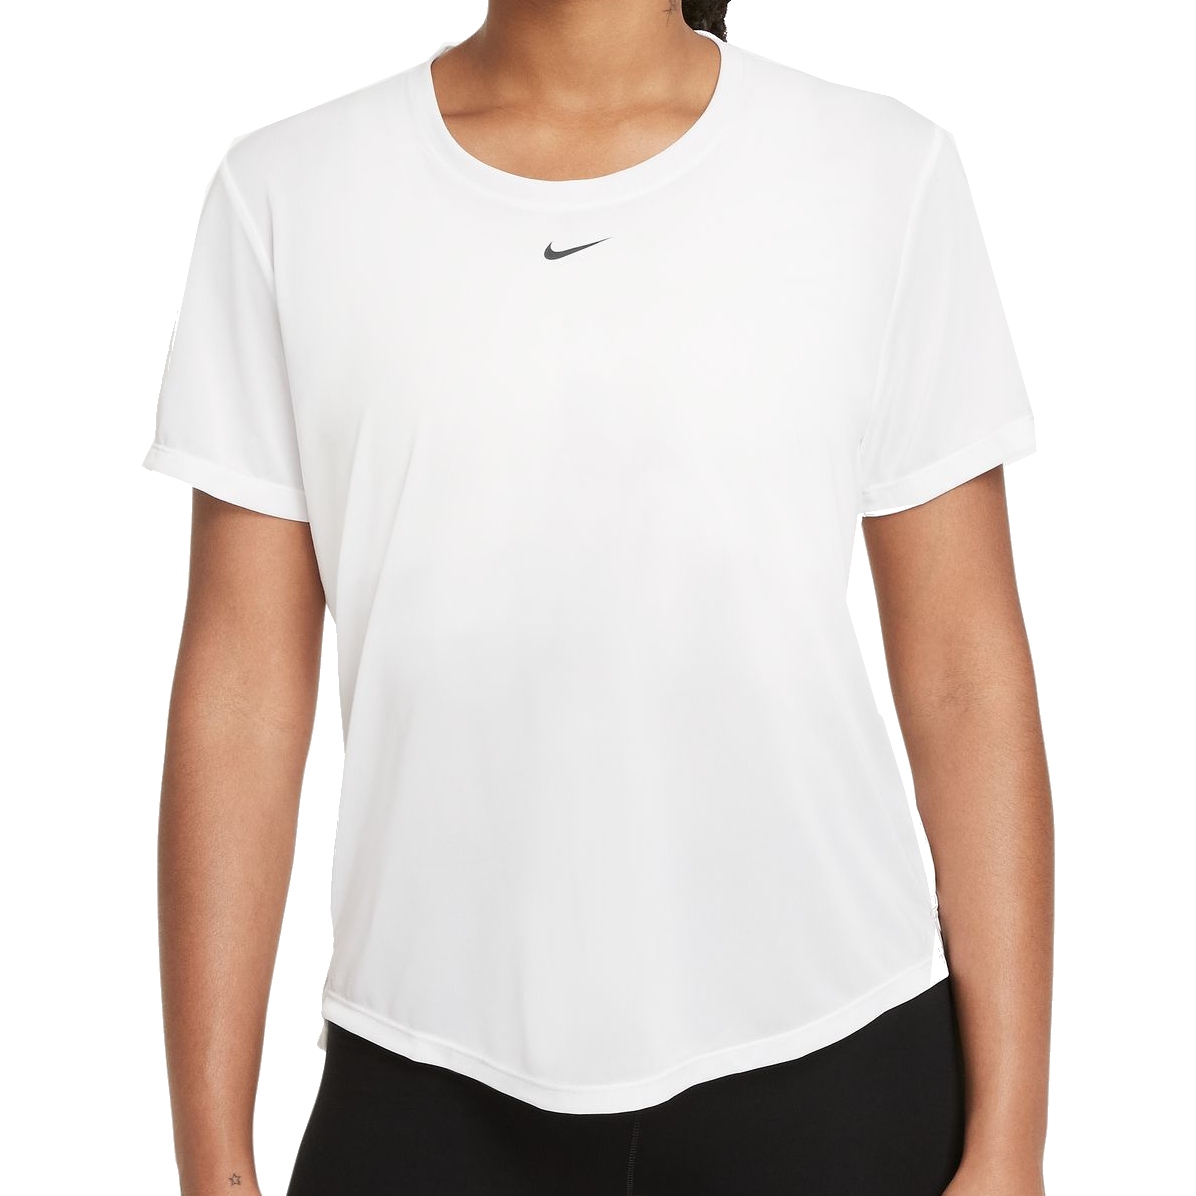 Produktbild von Nike Dri-Fit One Standard Fit Kurzarmshirt Damen - weiss/schwarz DD0638-100